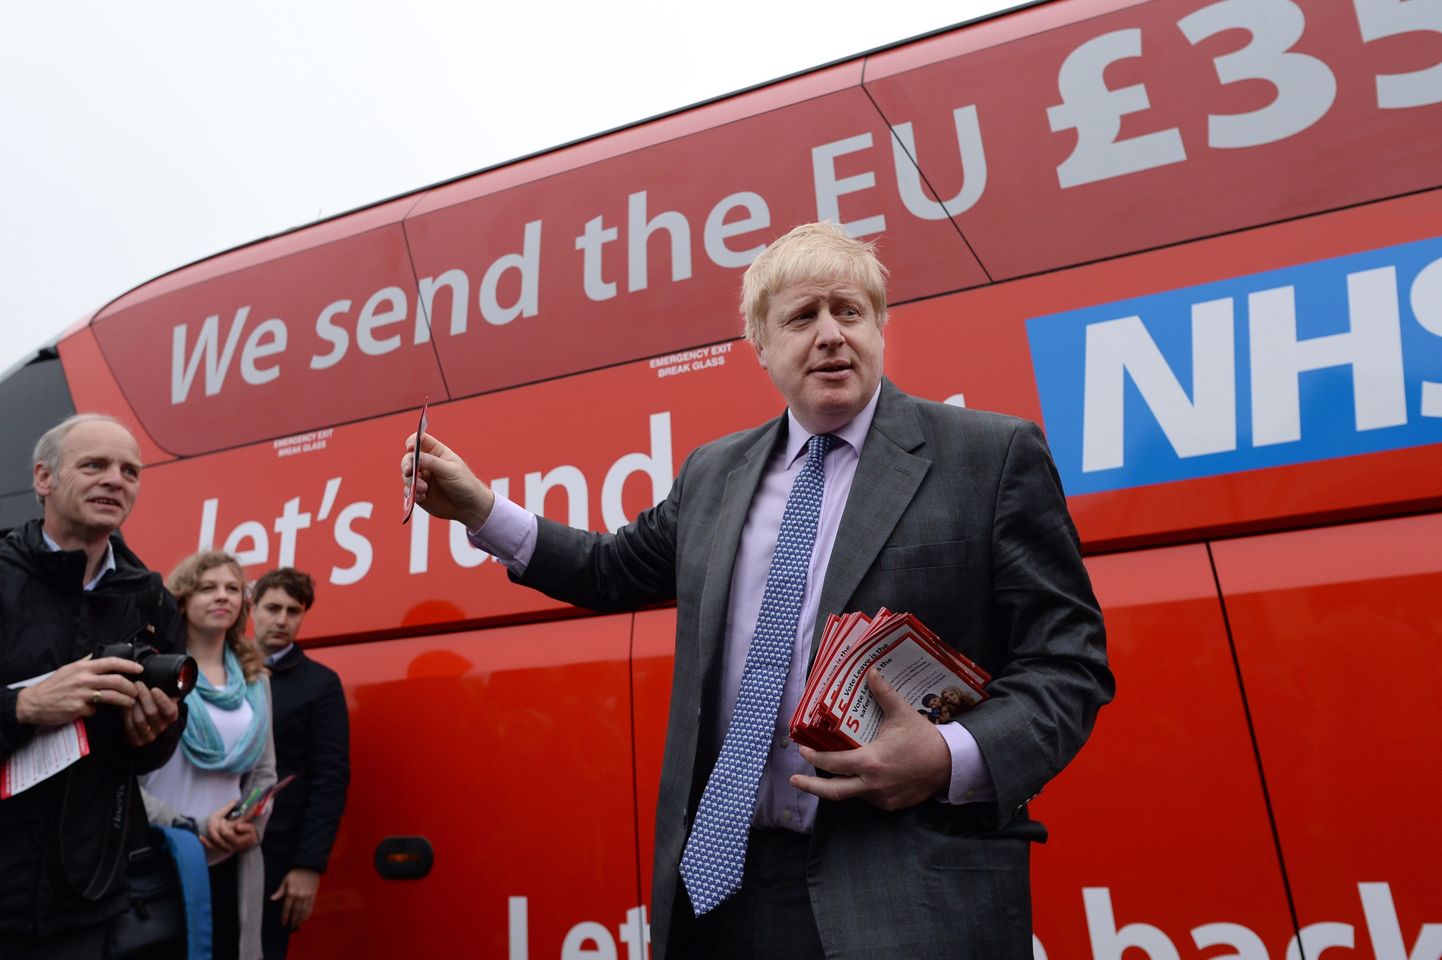 Suurbritannia endine välisminister Boris Johnson peab minema kohtusse, kuna väidetavalt esitas ta Brexiti referendumi eel valeväiteid. Pildil seisab ta bussi ees, millele kantud kirjas väideti, et Suurbritannia maksab Euroopale igal nädalal 350 miljonit naela.